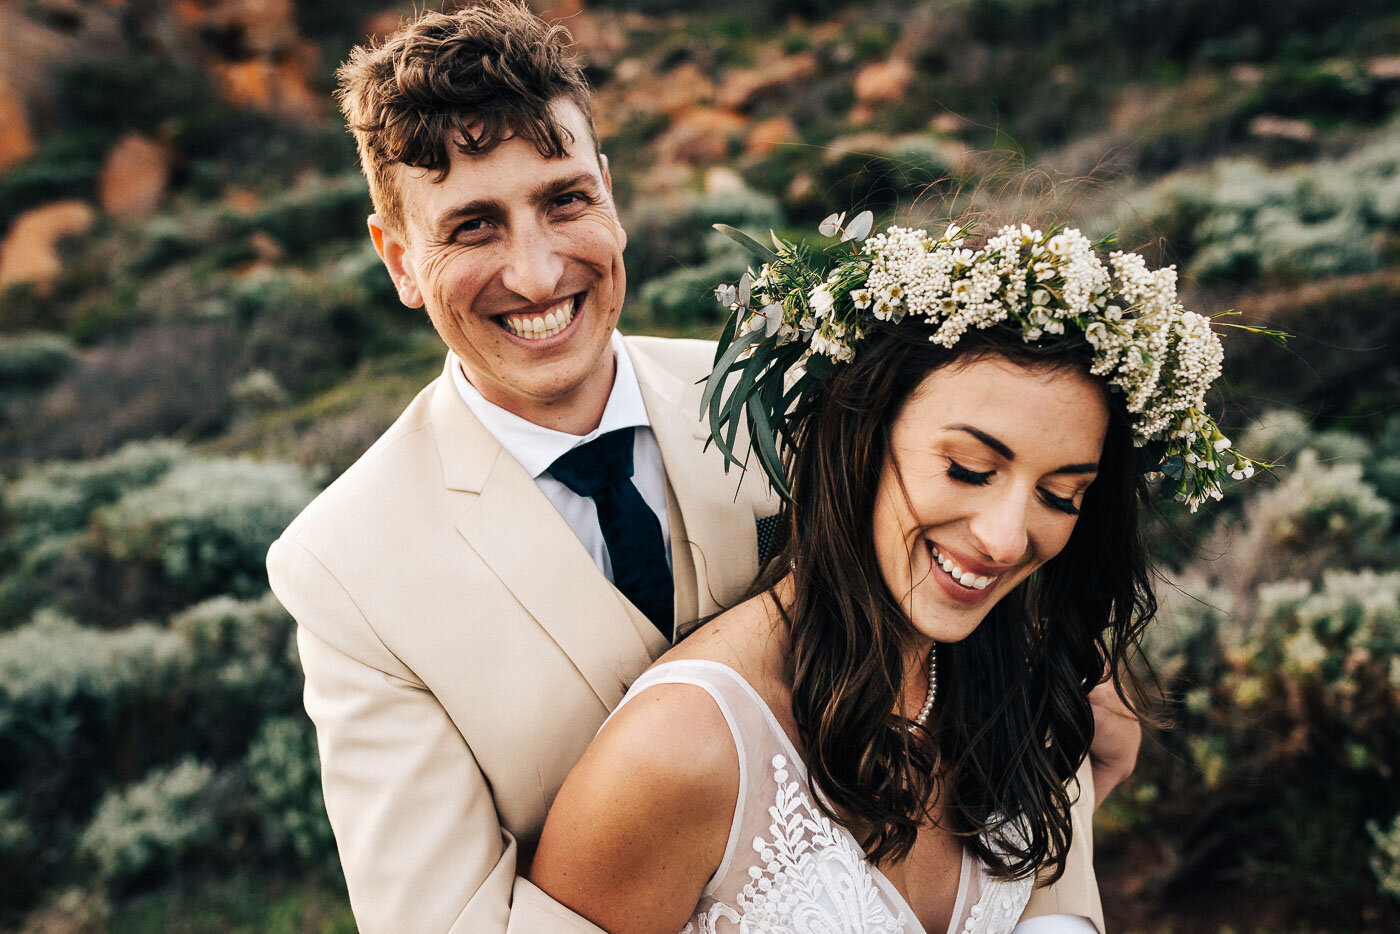 Eight Willows Retreat Wedding Photos